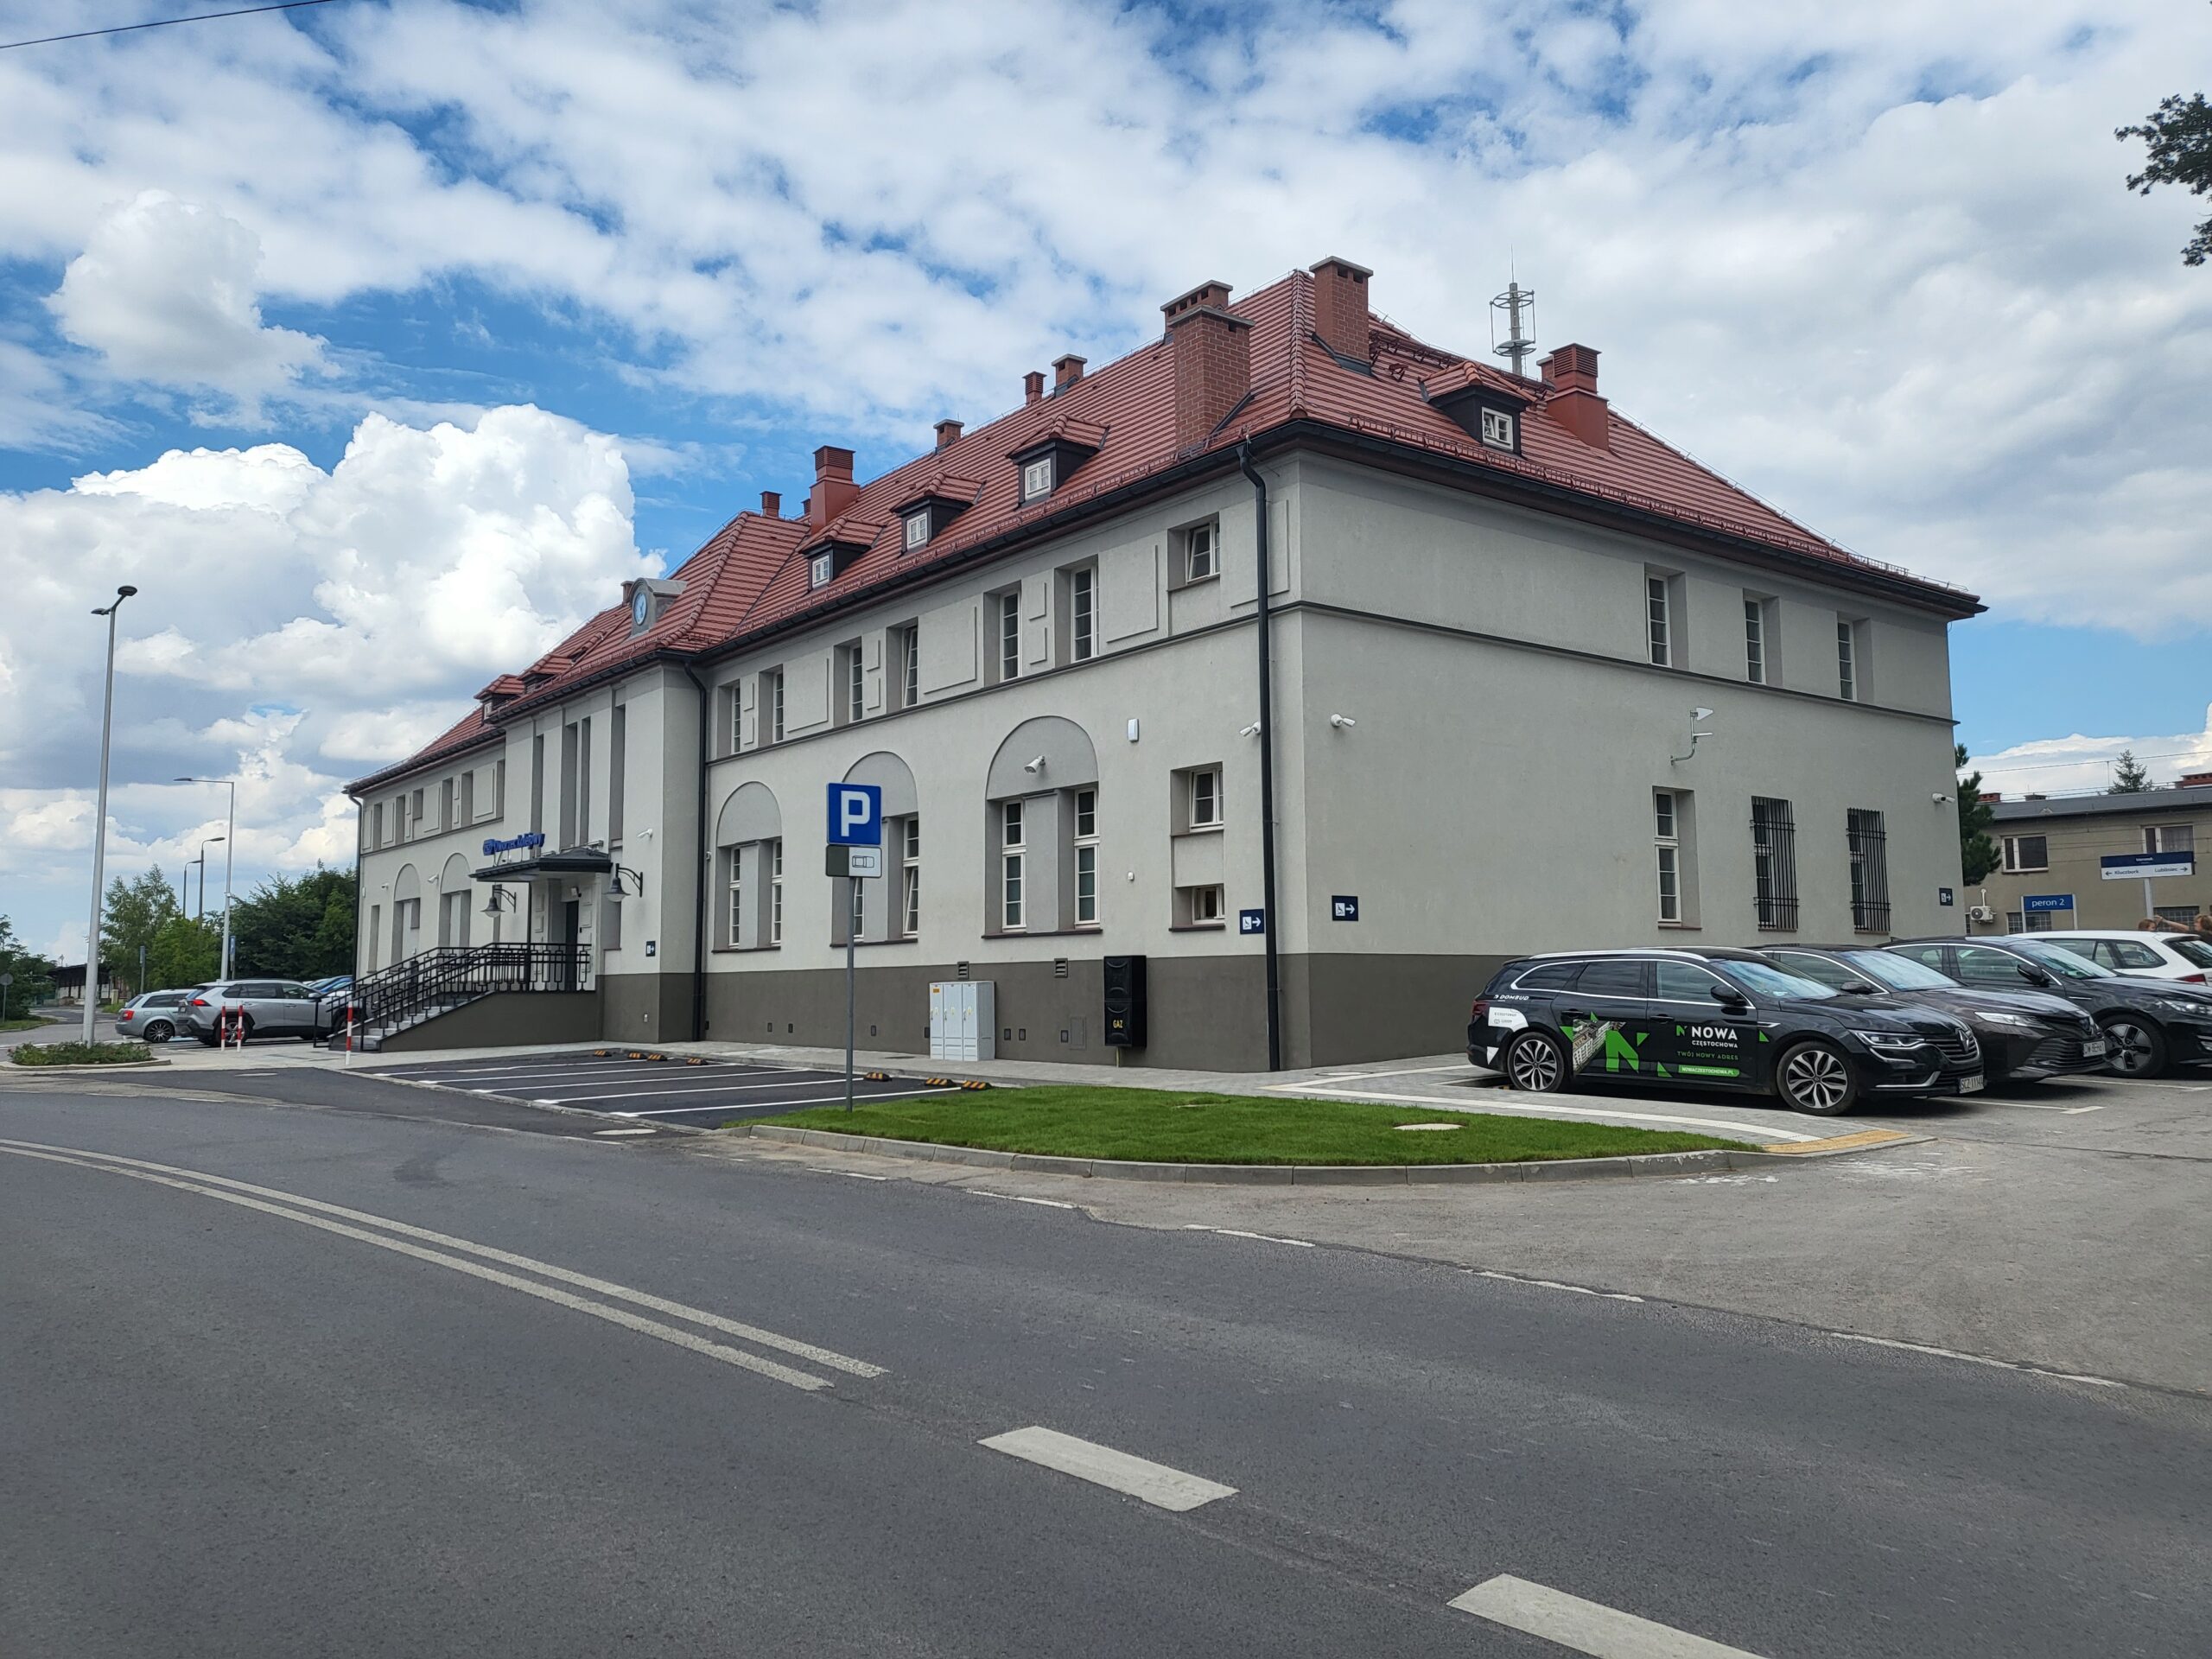 Dworzec w Oleśnie otwarty dla podróżnych (fot. PKP S.A.)